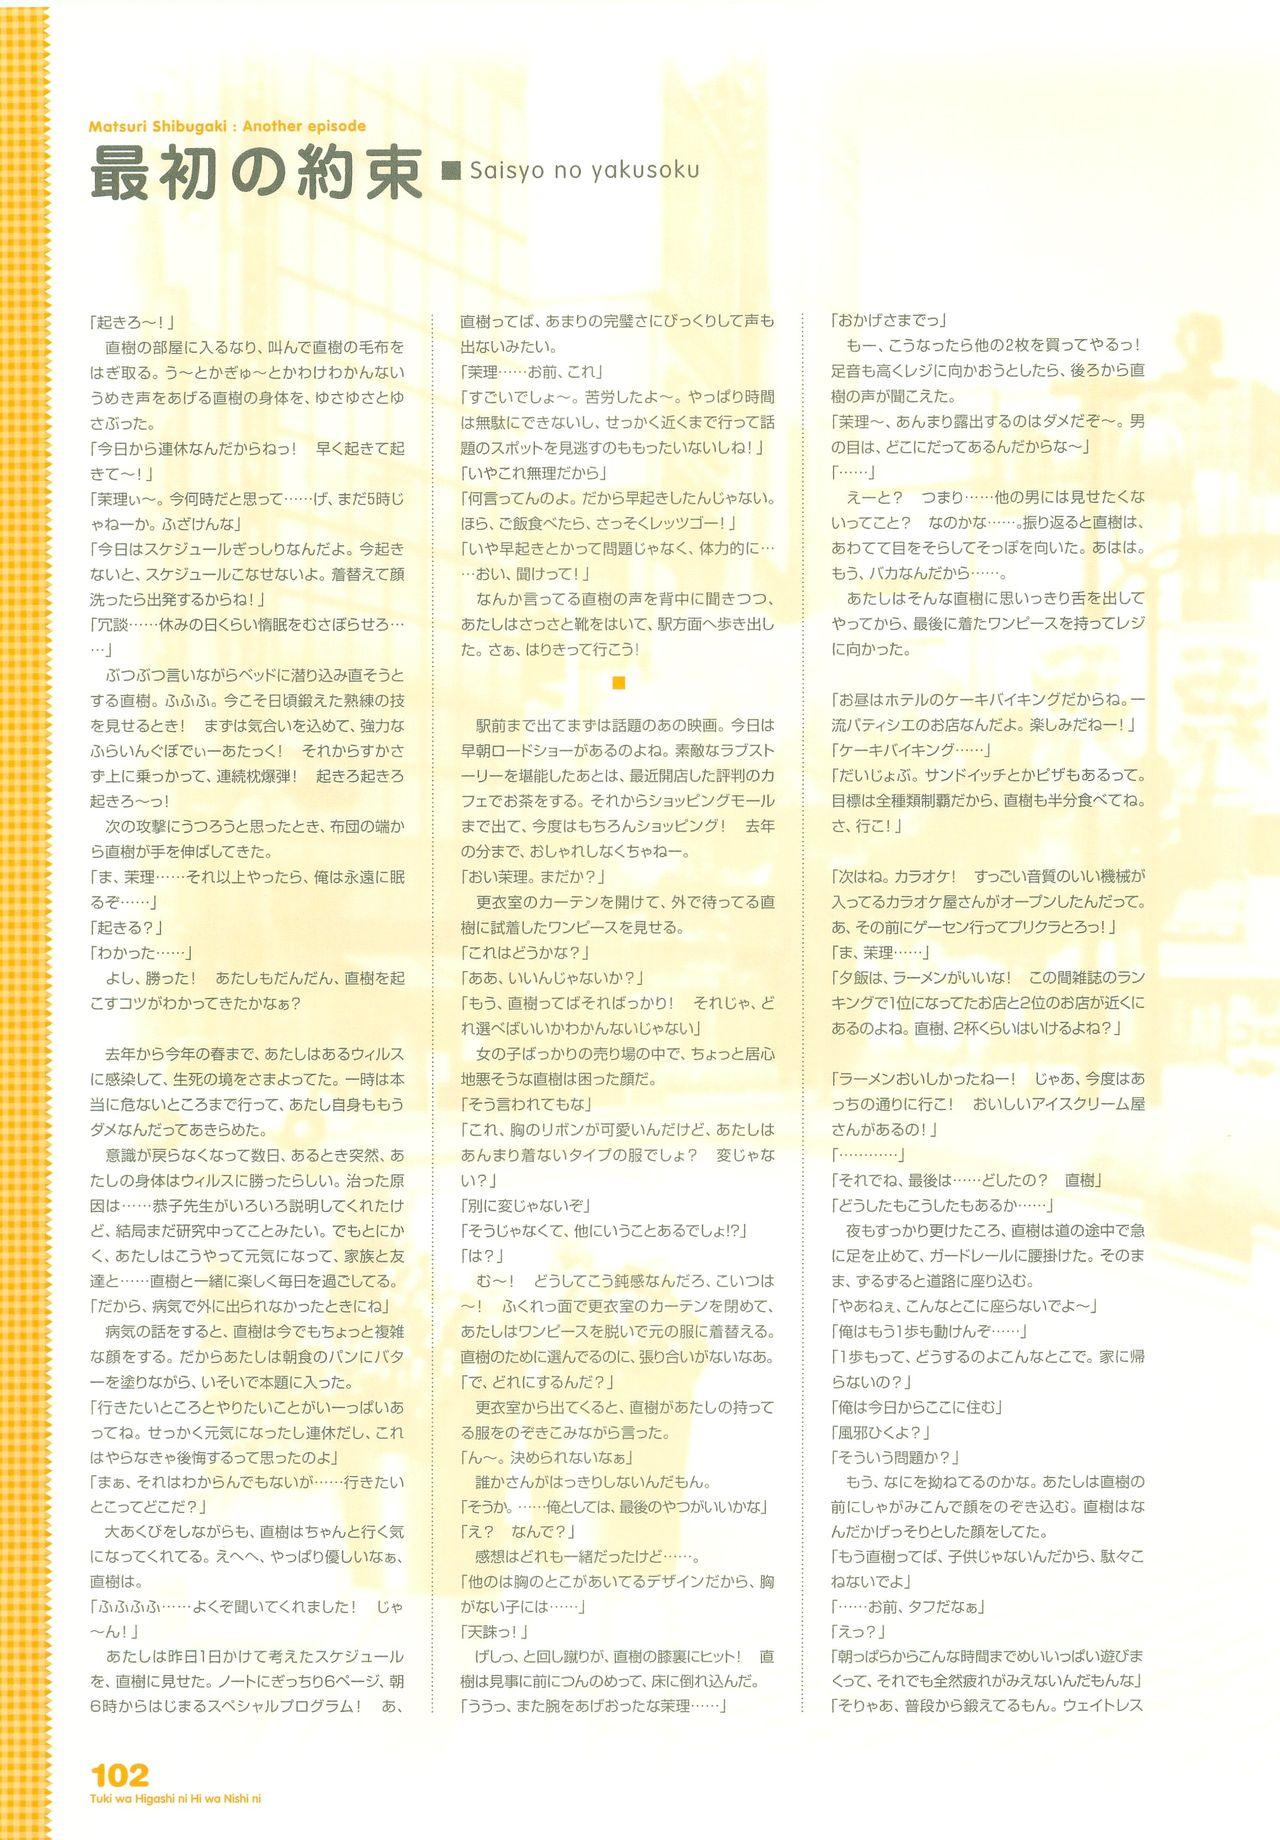 Tsuki wa Higashi ni Hi wa Nishi ni - Operation Sanctuary - Visual Fan Book Shokai Ban 129